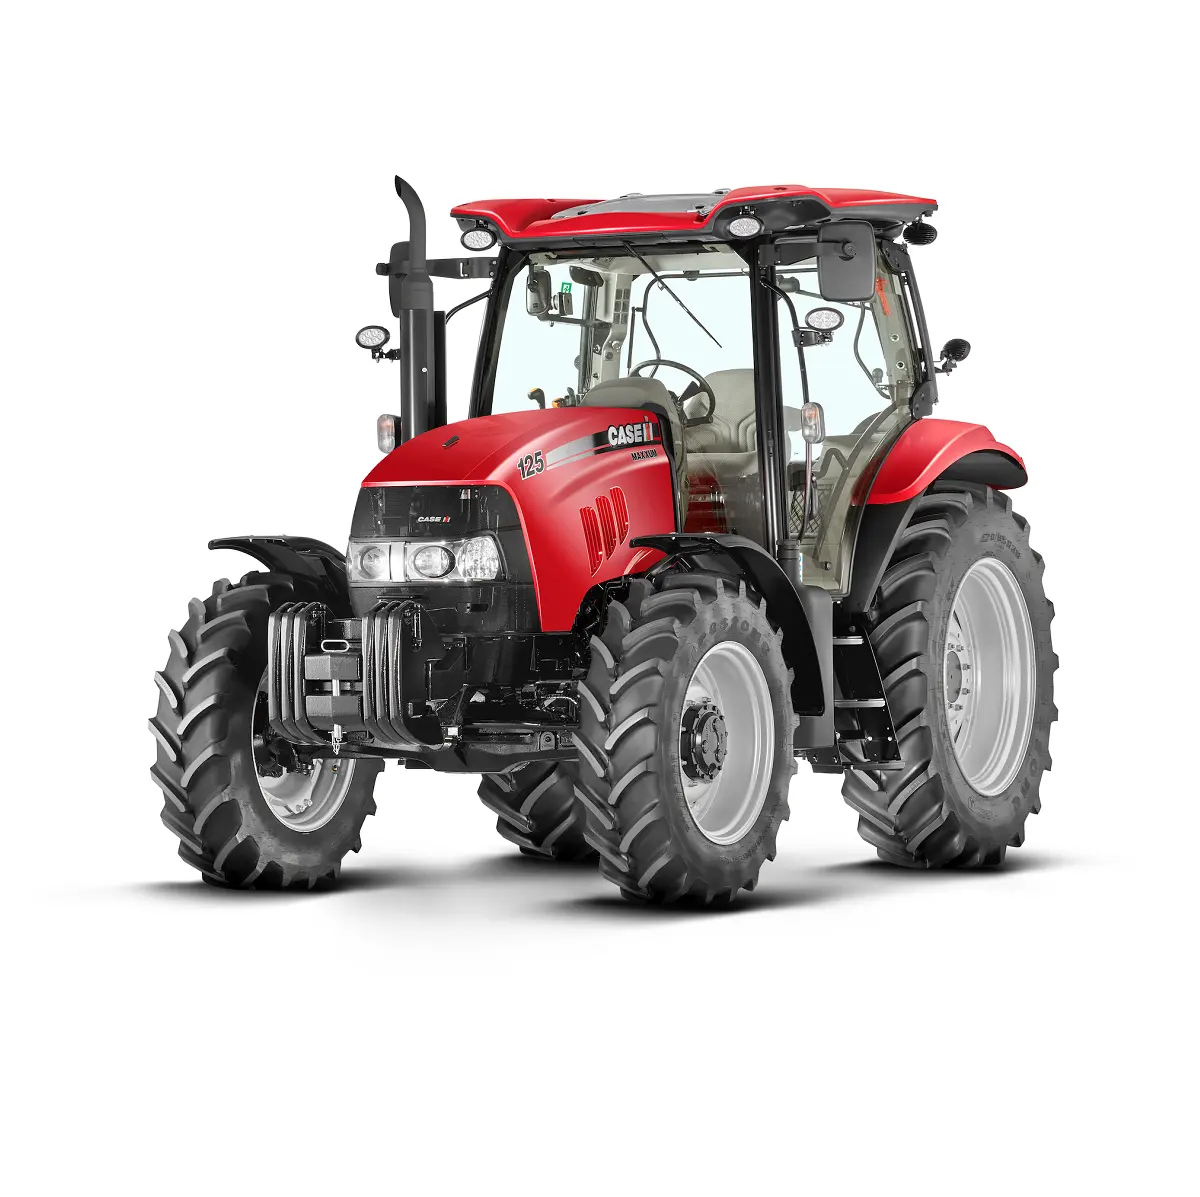 Großhandel Massey Fergus son Traktor Premium Qualität Original Case IH Traktoren für landwirtschaft liche Maschinen zum Verkauf